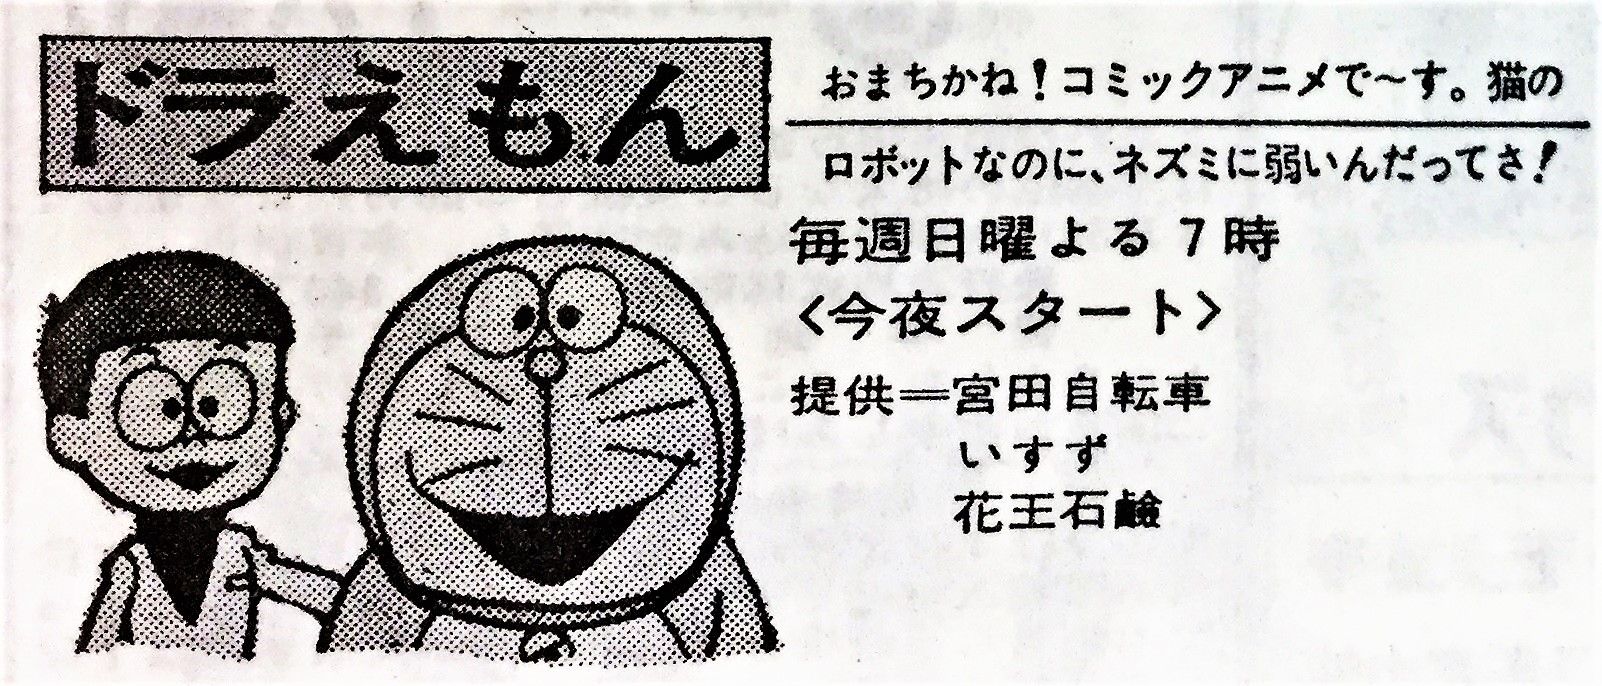 1973年4月1日 新聞テレビ欄 日本テレビ版 ドラえもん 今夜スタート ヾ D ノ 広告